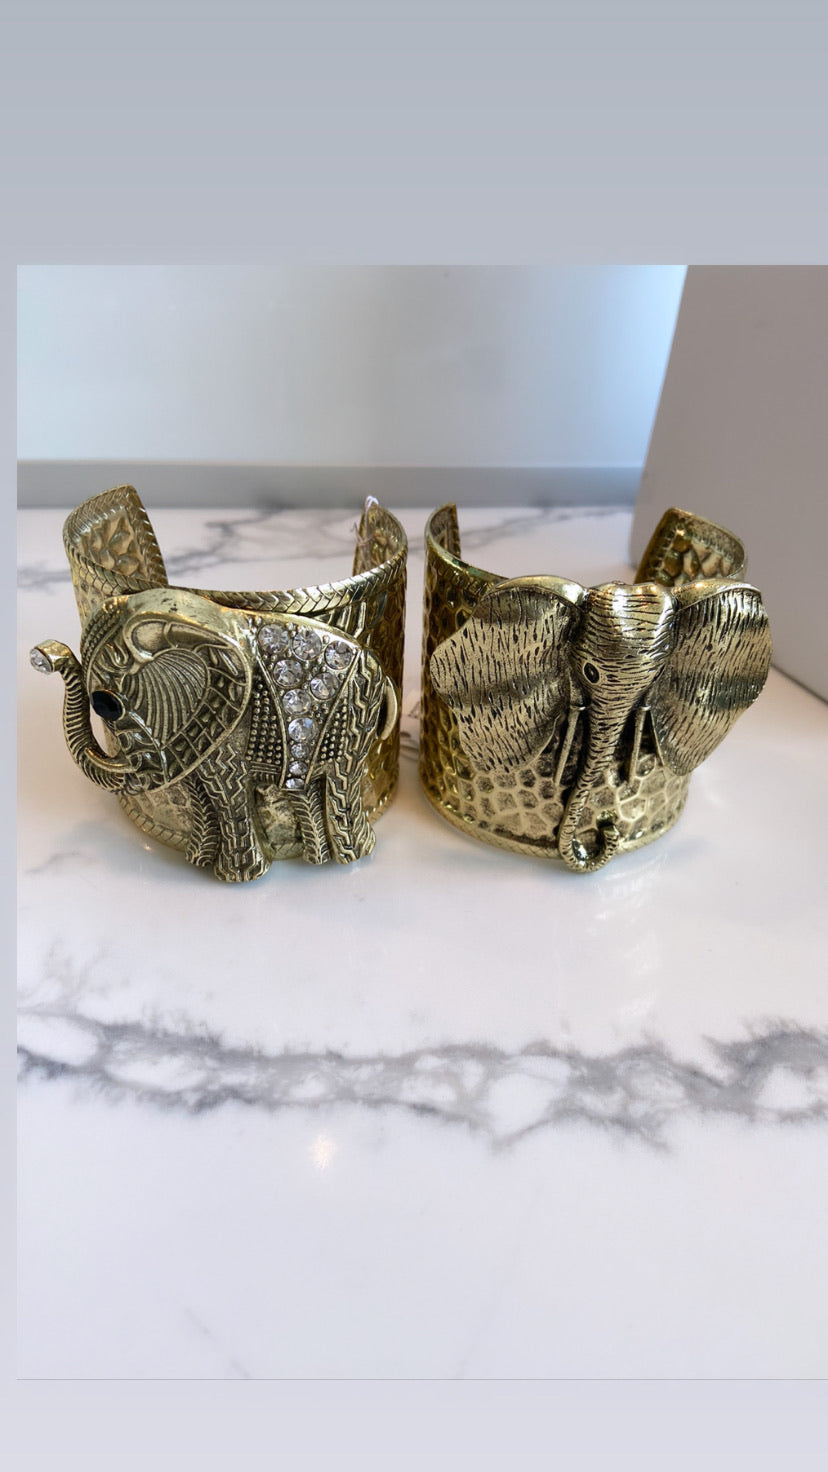 Elephants cuff bracelet